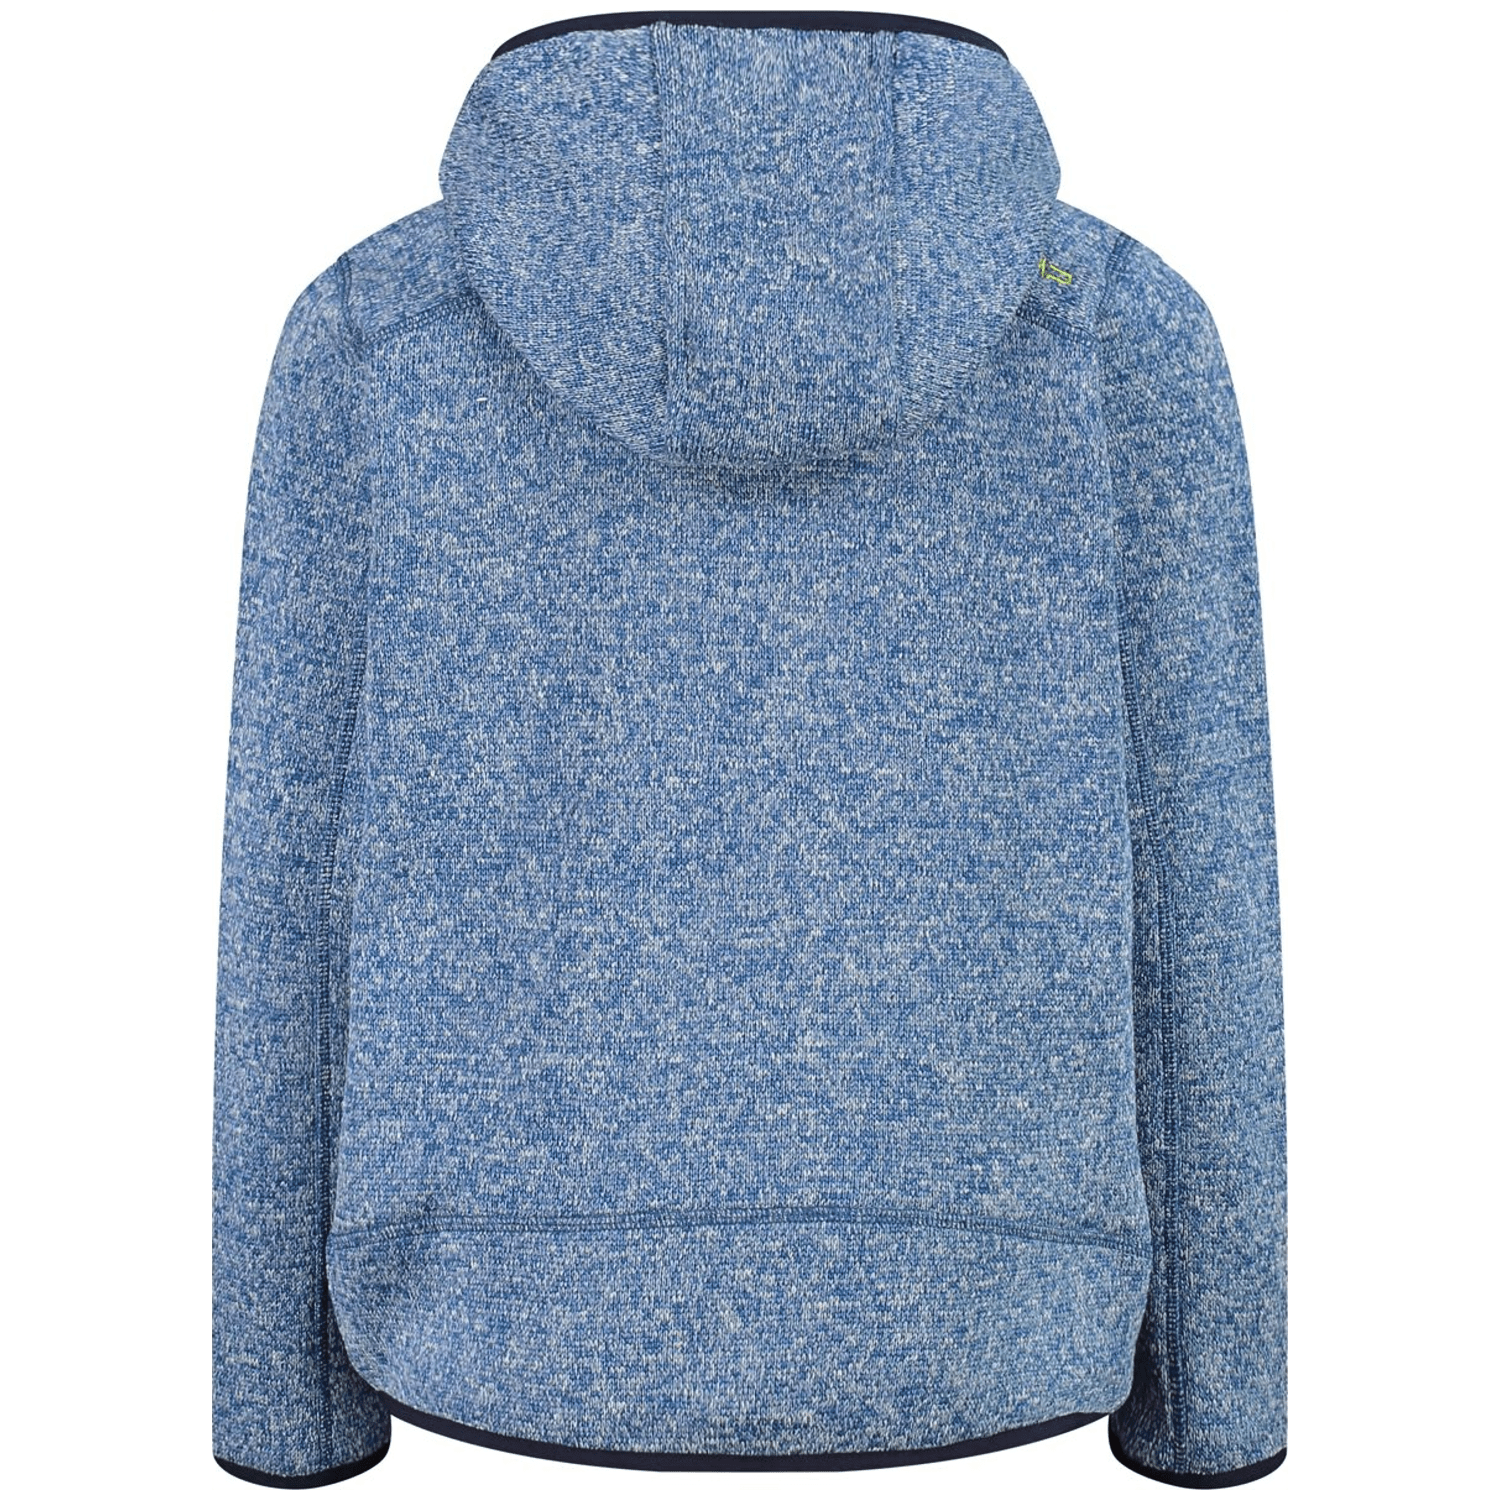 CMP Jacket Fix Hood Jungen Kapuzensweater